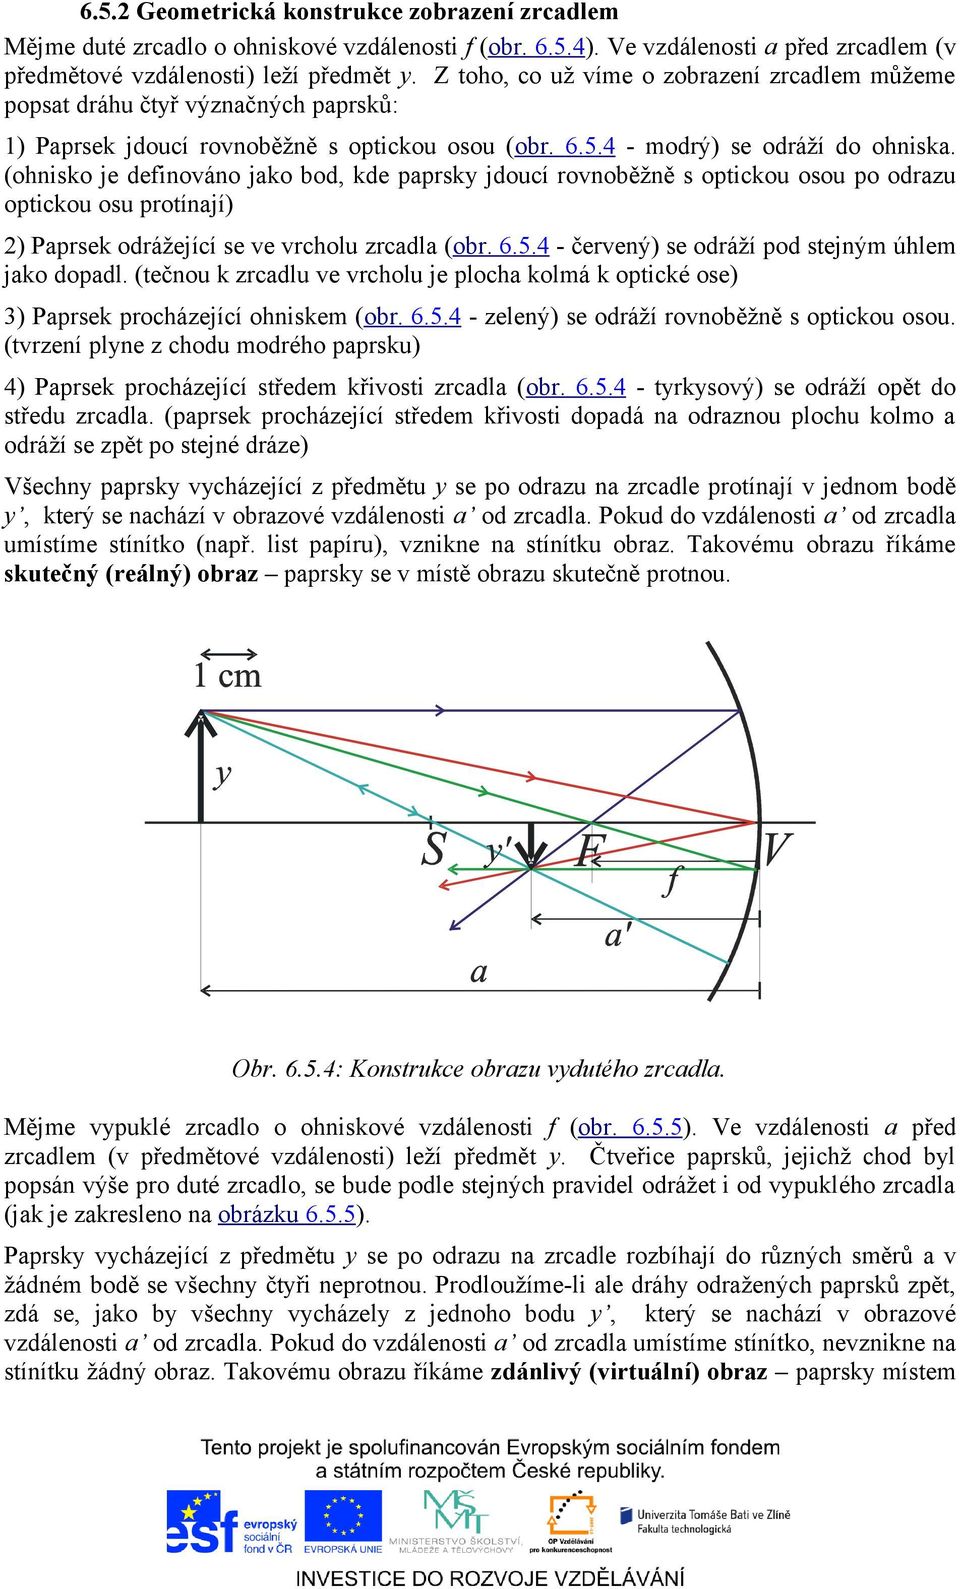 (ohnisko je definováno jako bod, kde paprsky jdoucí rovnoběžně s optickou osou po odrazu optickou osu protínají) 2) Paprsek odrážející se ve vrcholu zrcadla (obr. 6.5.